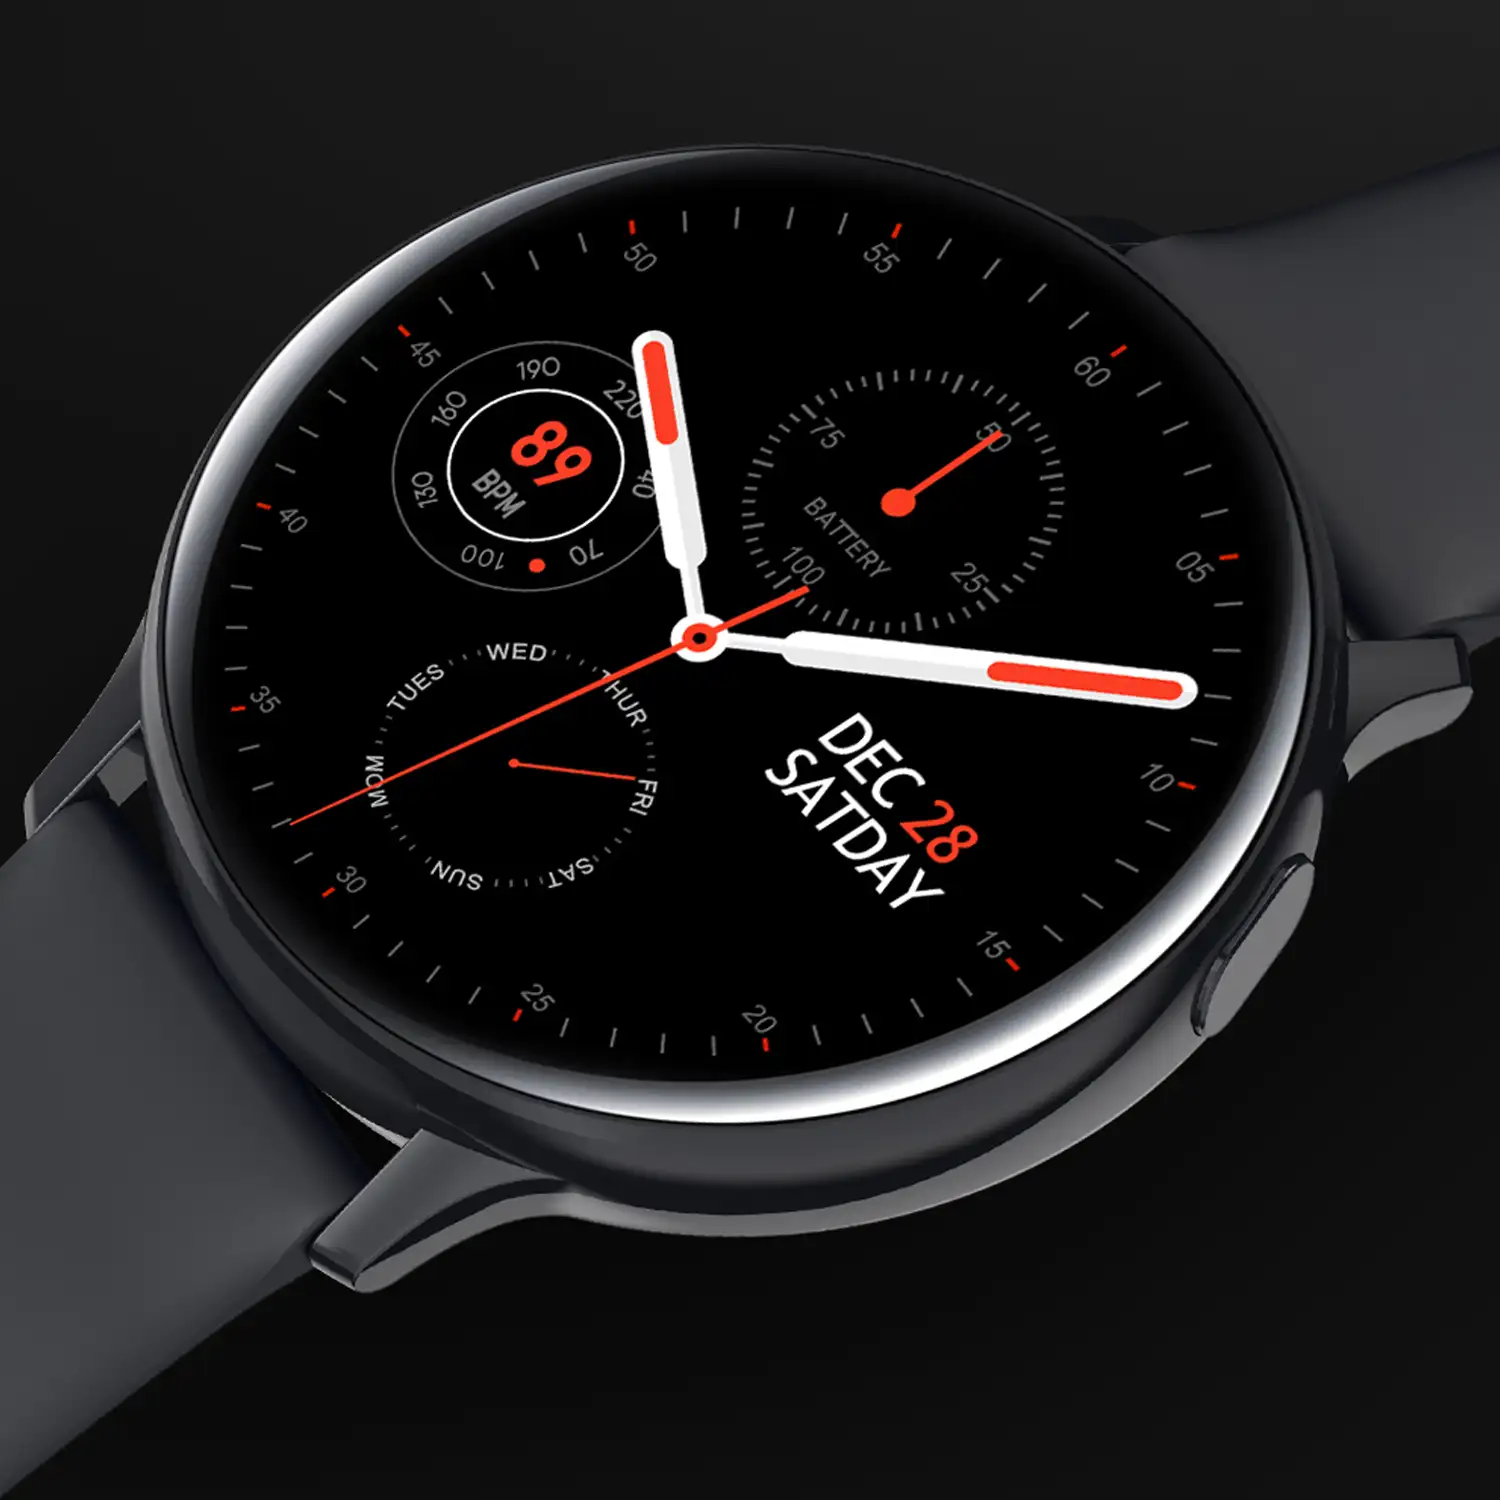 Smartwatch deportivo S30, con notificaciones de aplicaciones. Monitor de tensión y O2 en sangre. Batería de larga duración.